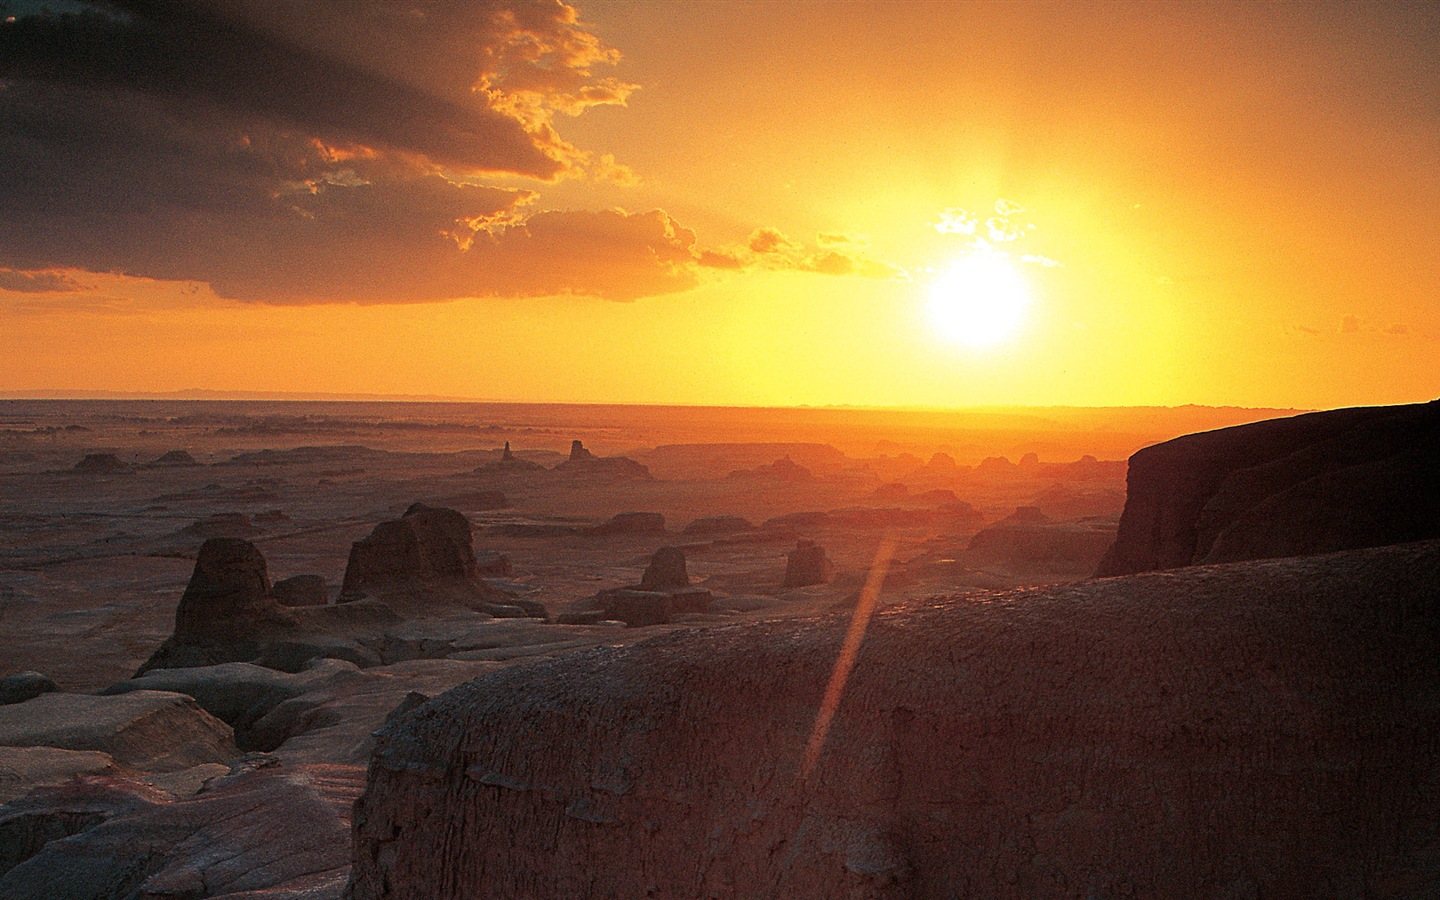 Les déserts chauds et arides, de Windows 8 fonds d'écran widescreen panoramique #12 - 1440x900